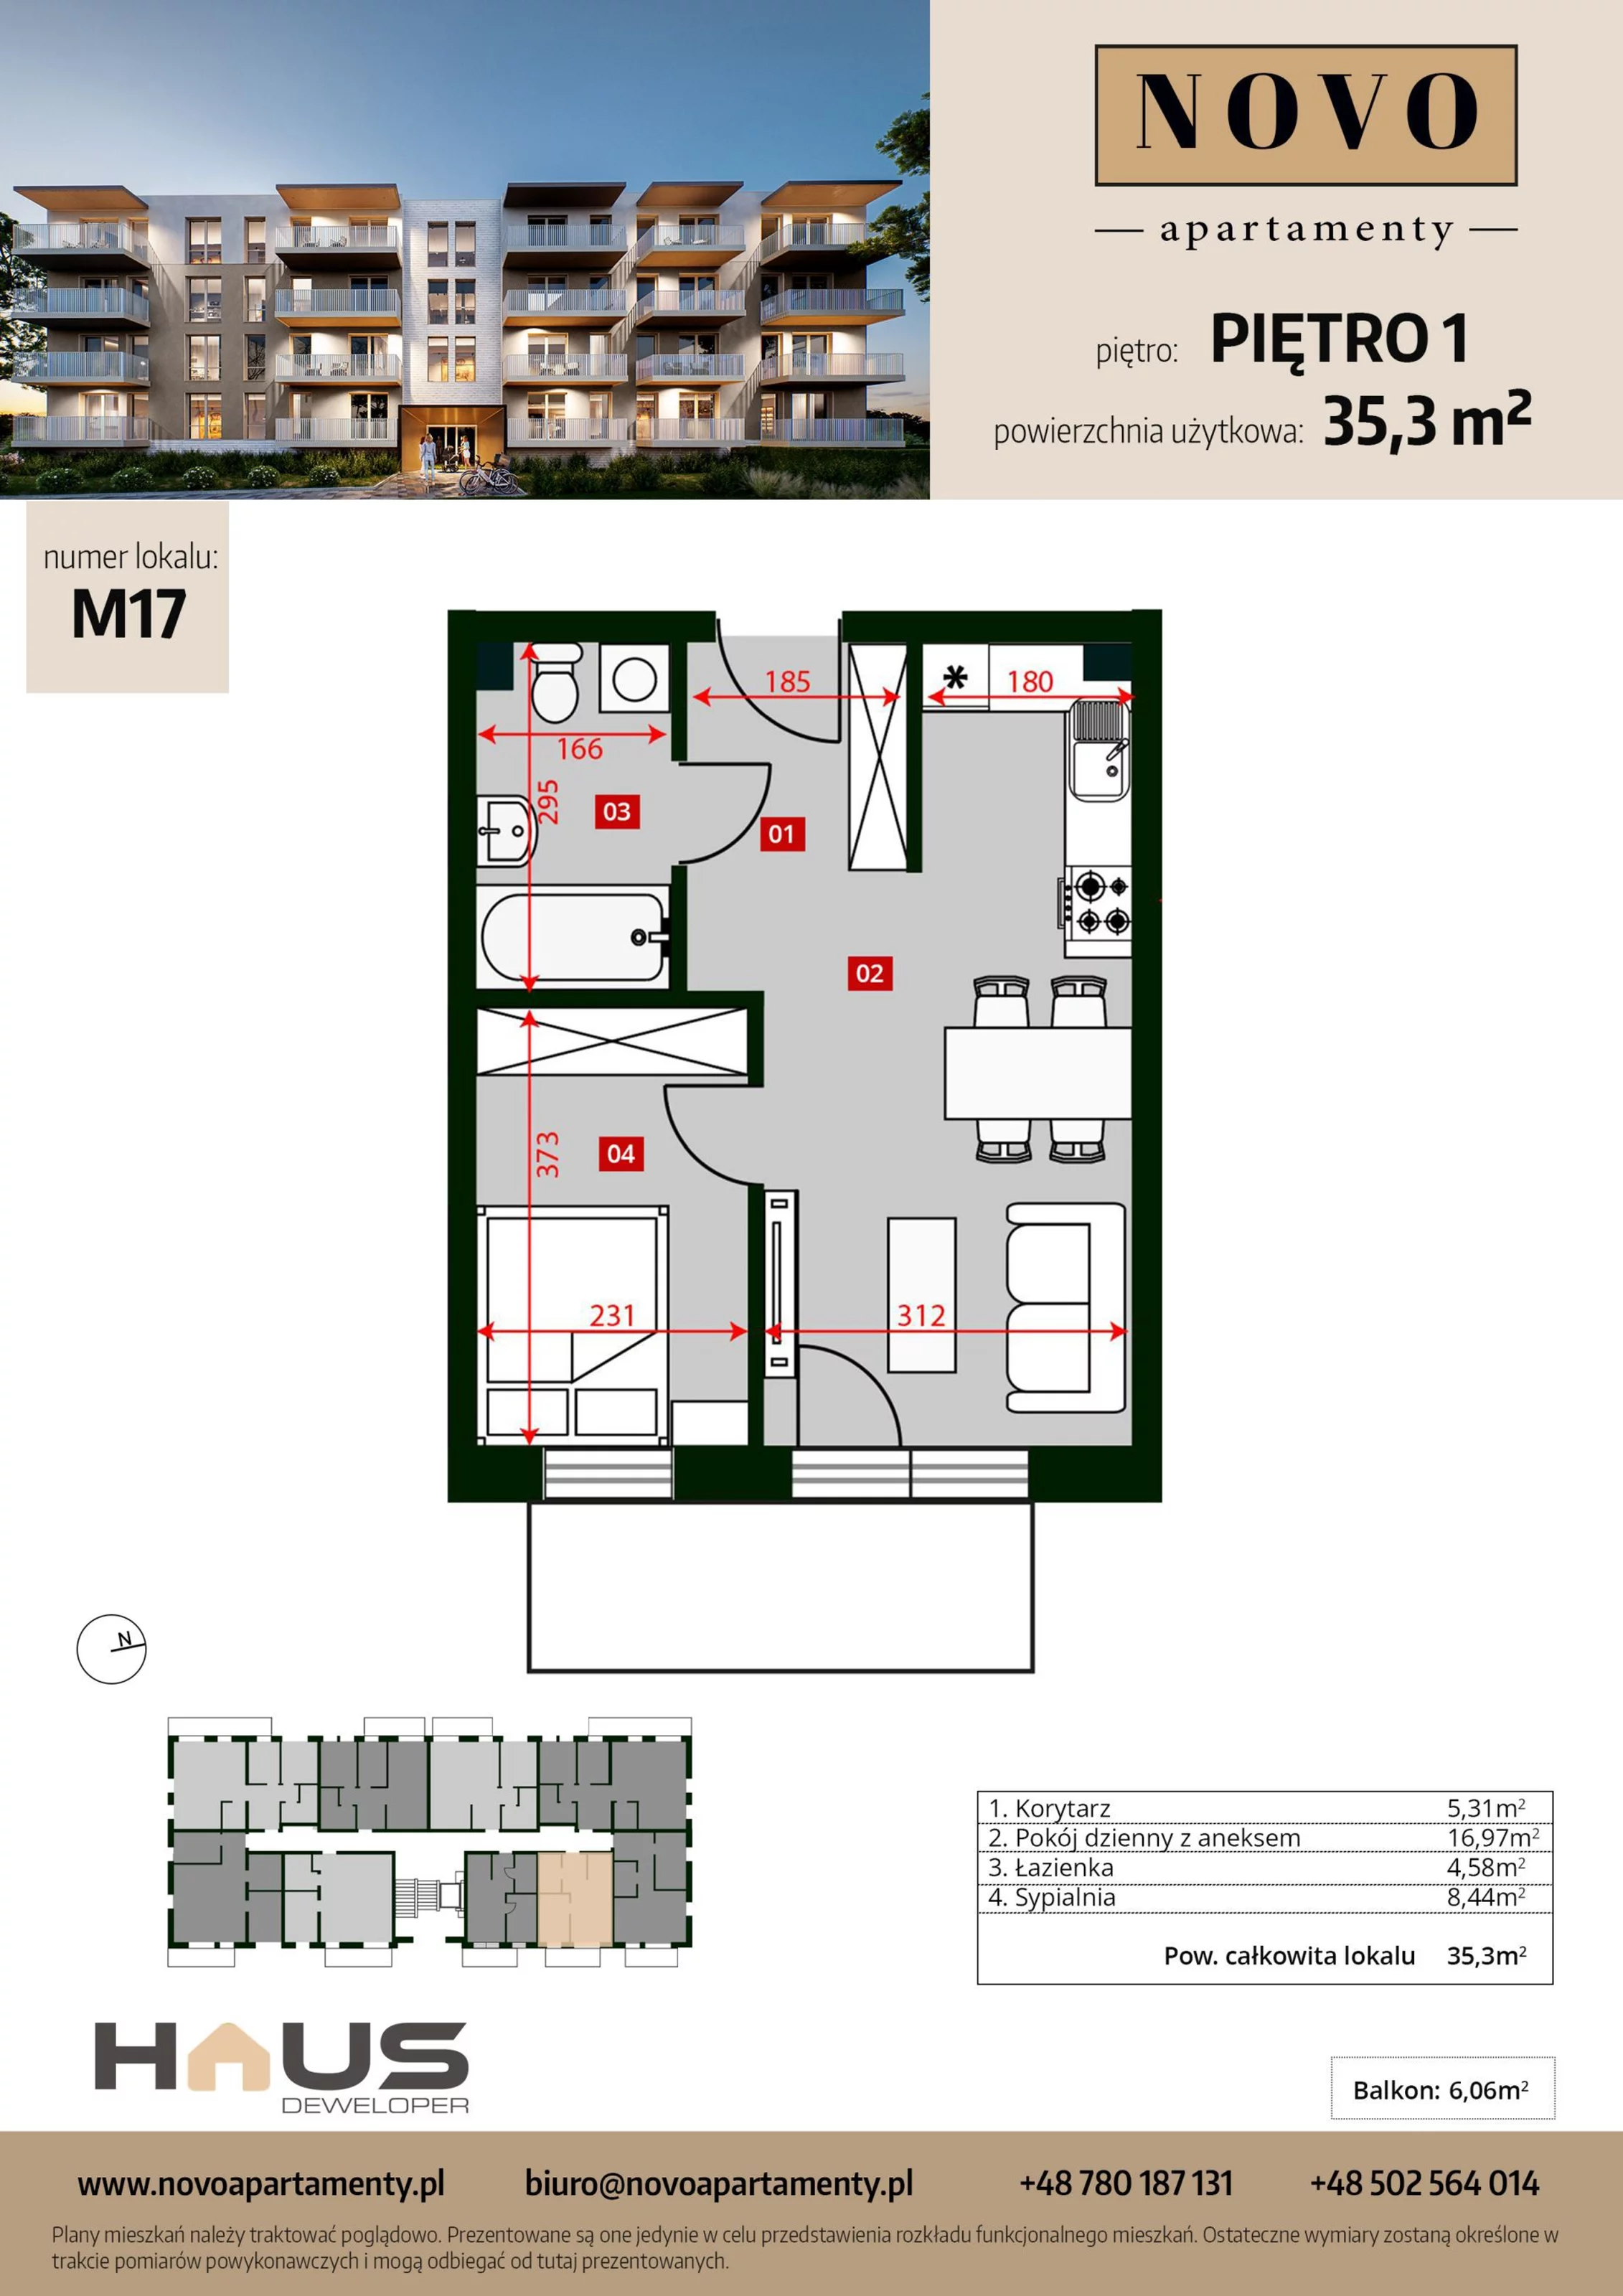 Mieszkanie 35,30 m², piętro 1, oferta nr M17, Apartamenty NOVO, Nysa, ul. Franciszkańska